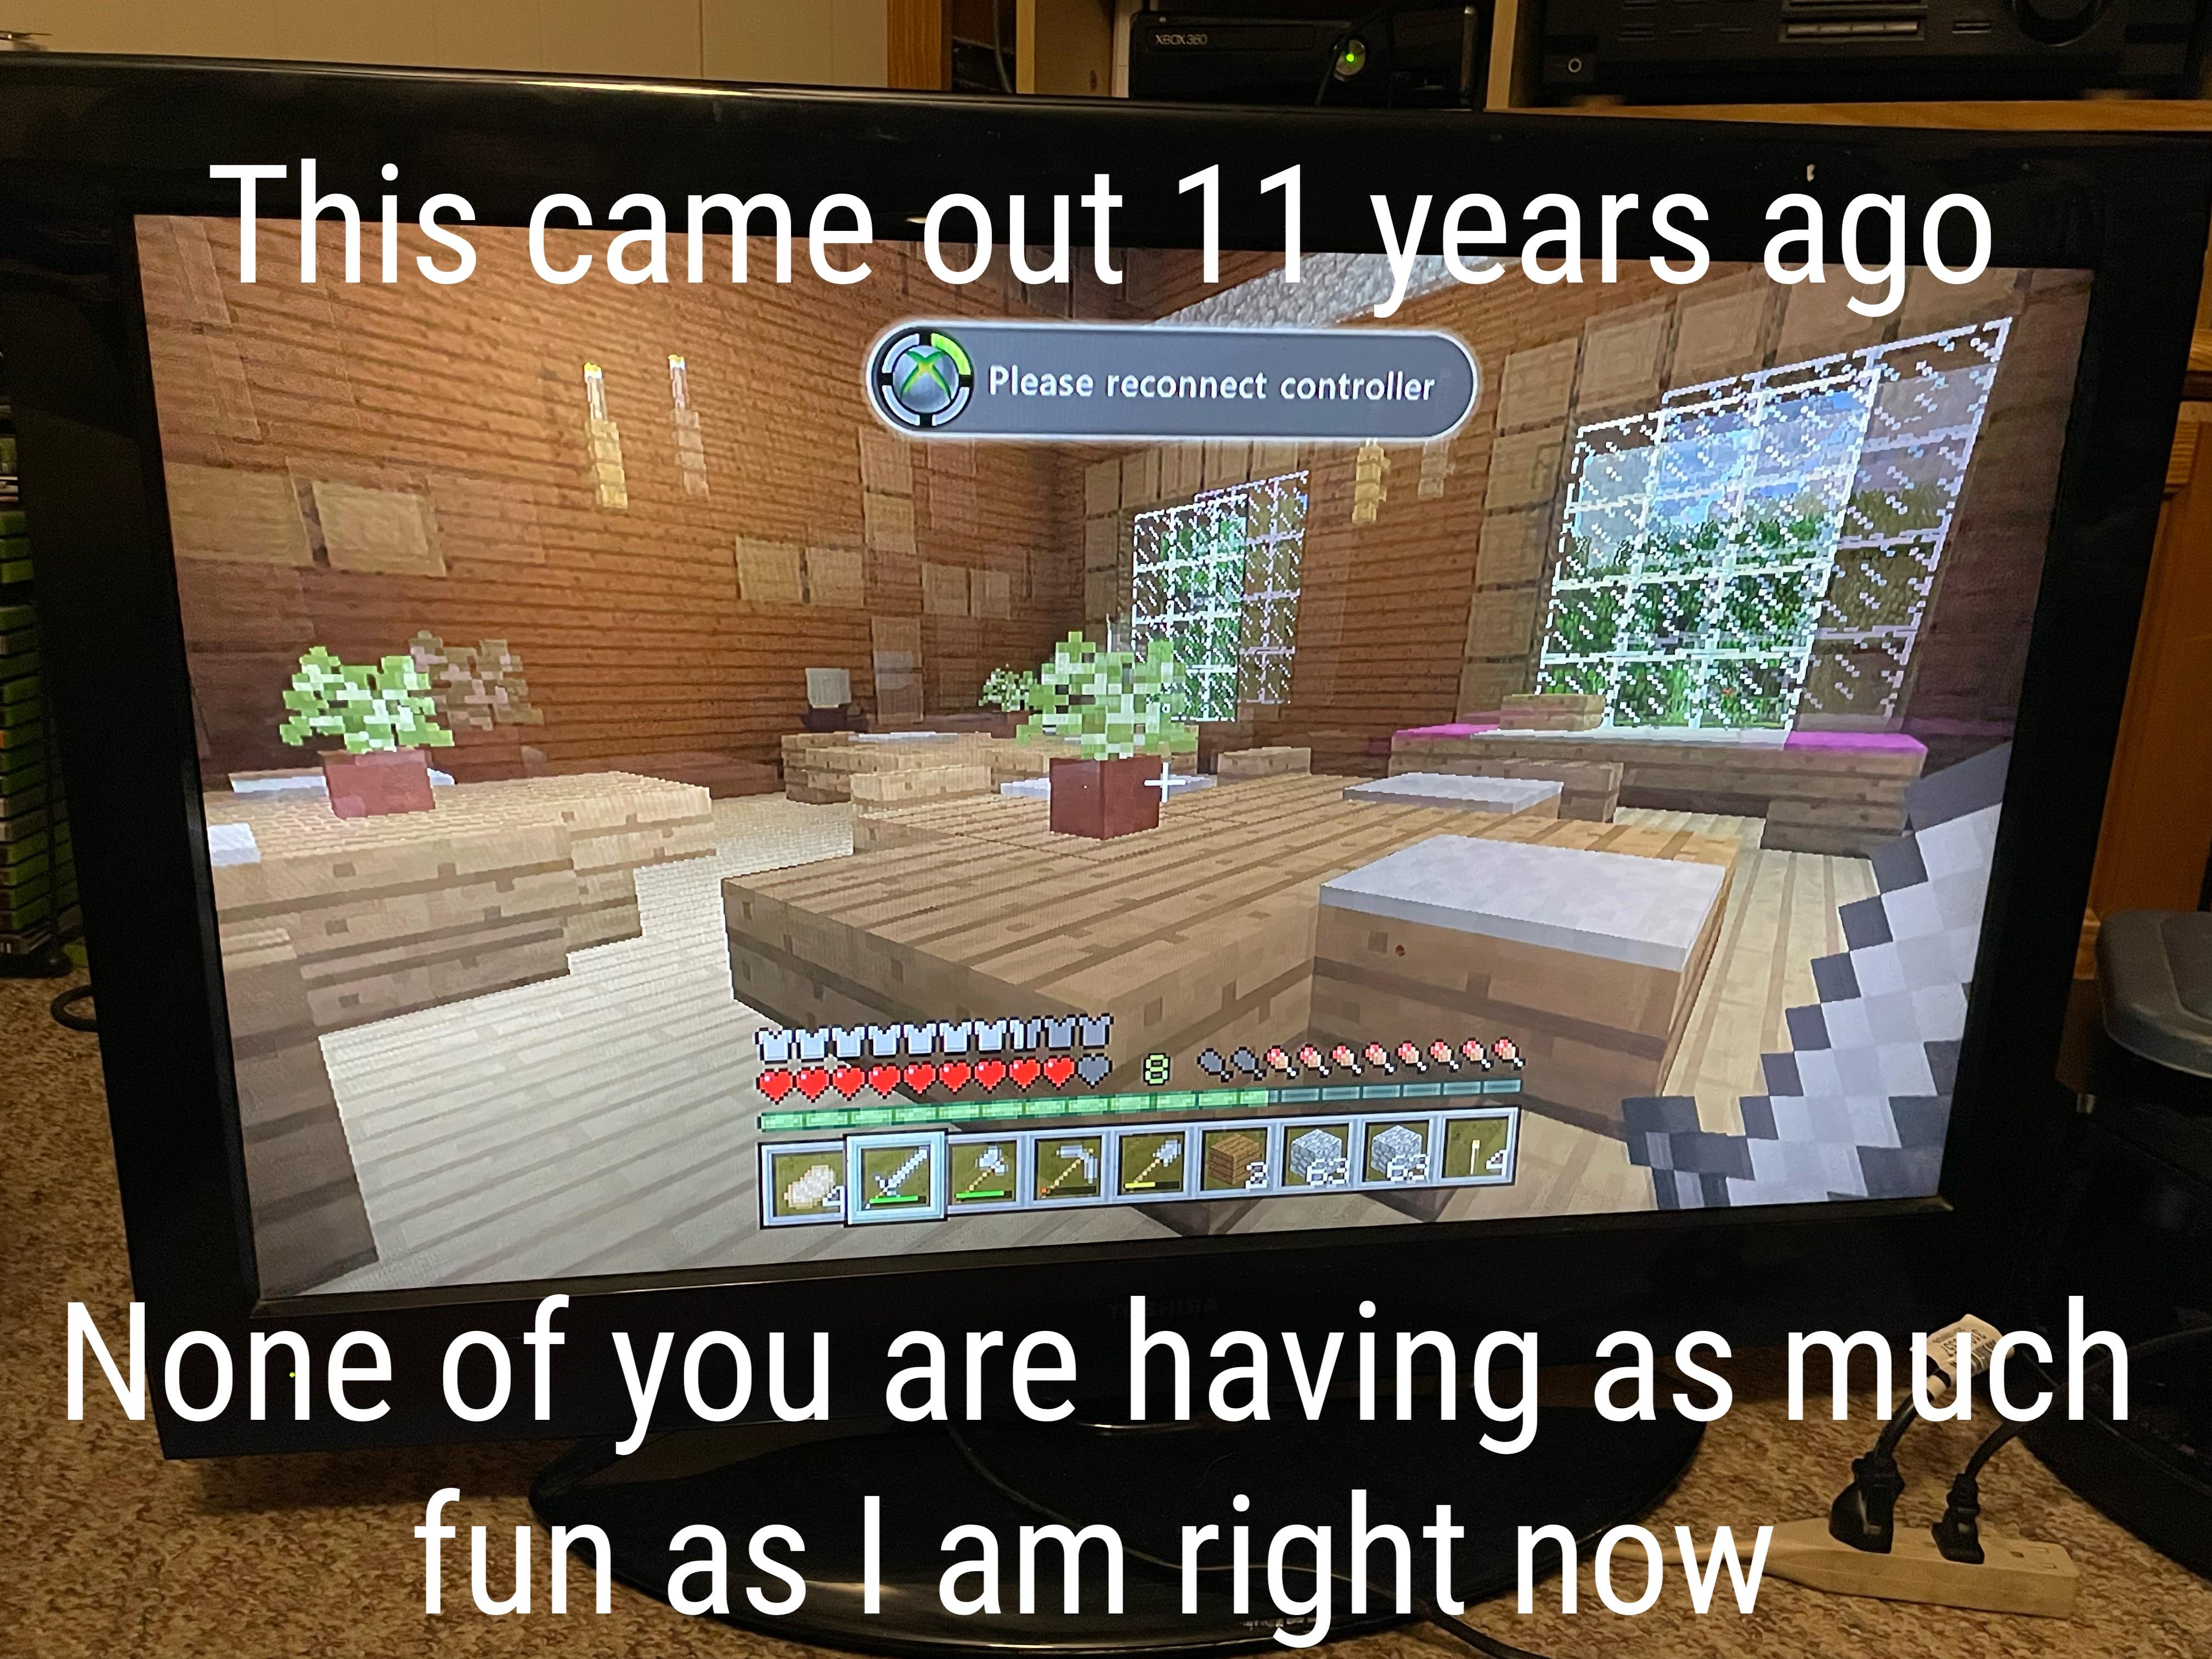 Minecraft Memes - "Time flies in Minecraft"